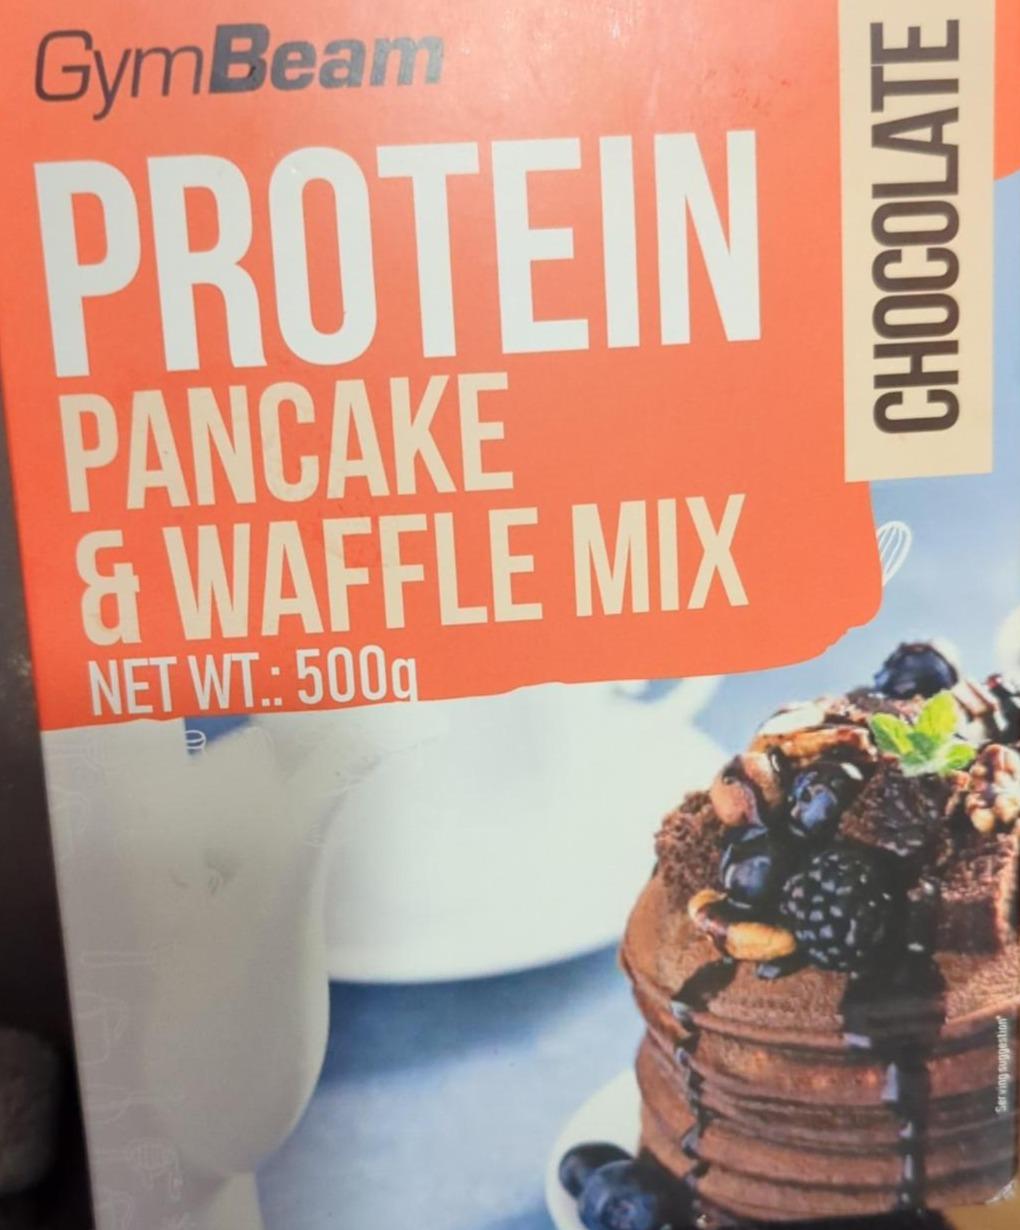 Zdjęcia - Protein pancake waffle mix chocolate GymBeam